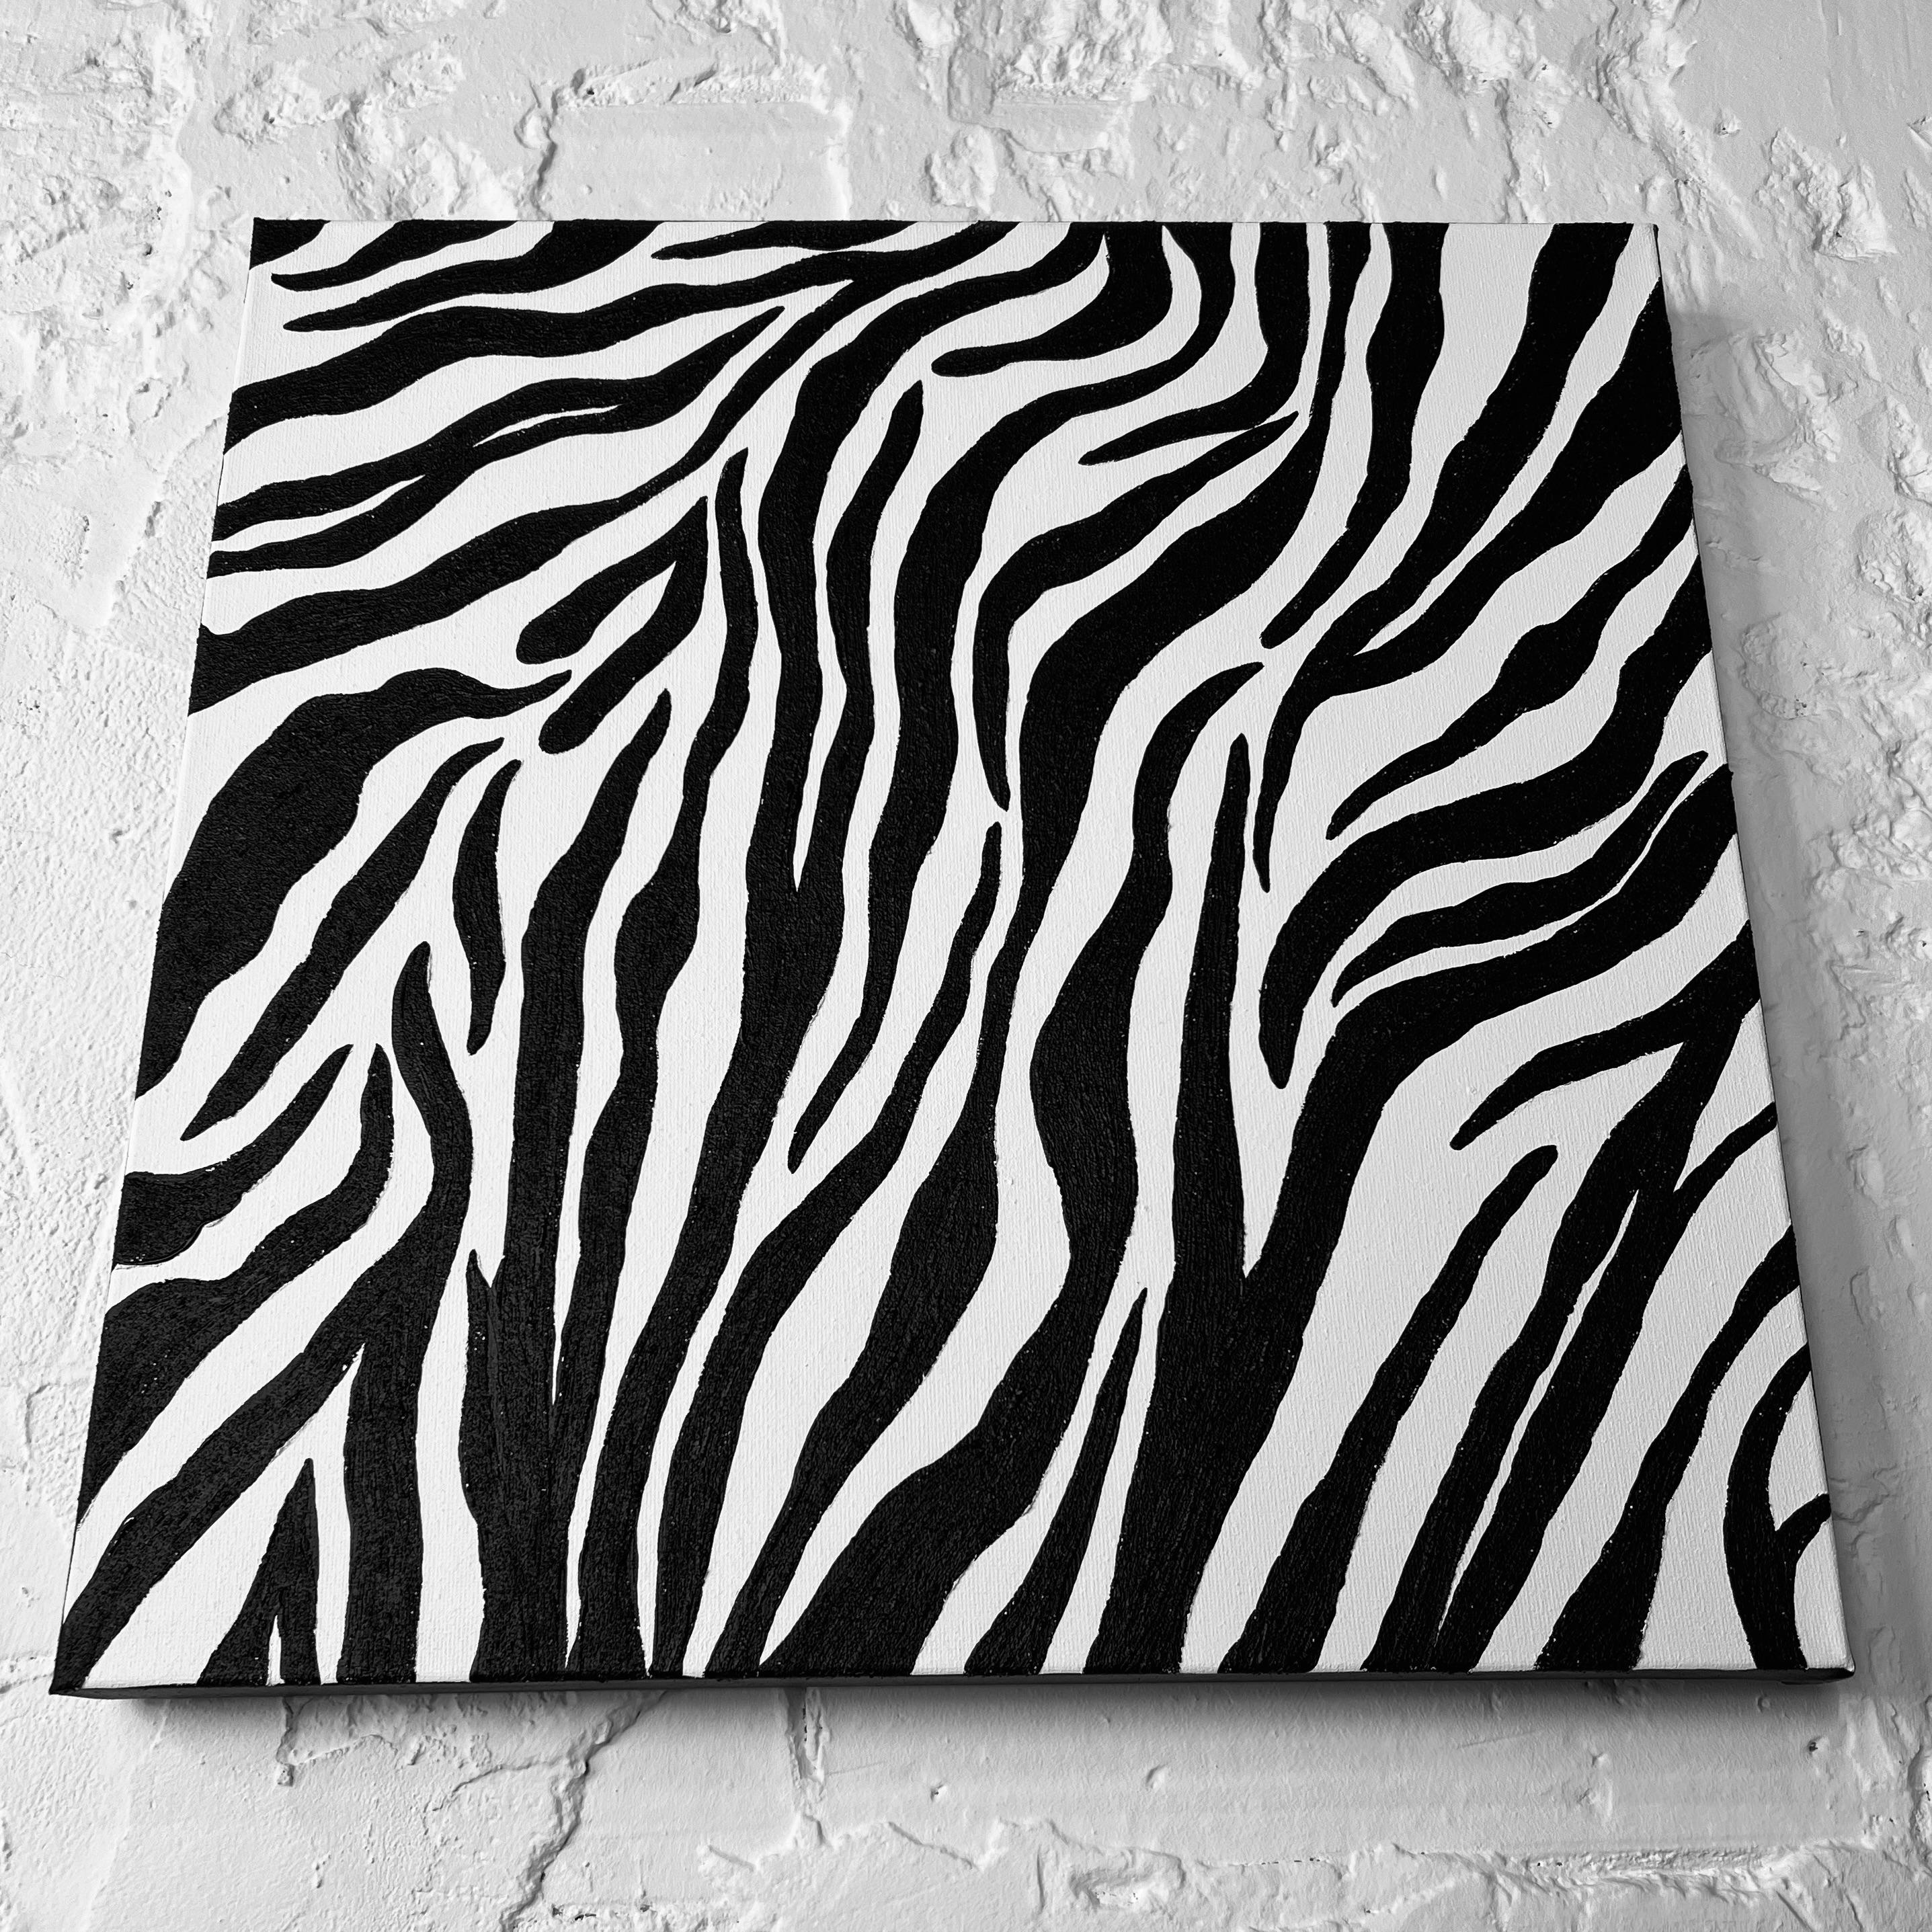 Zebra Pattern For Sale 4